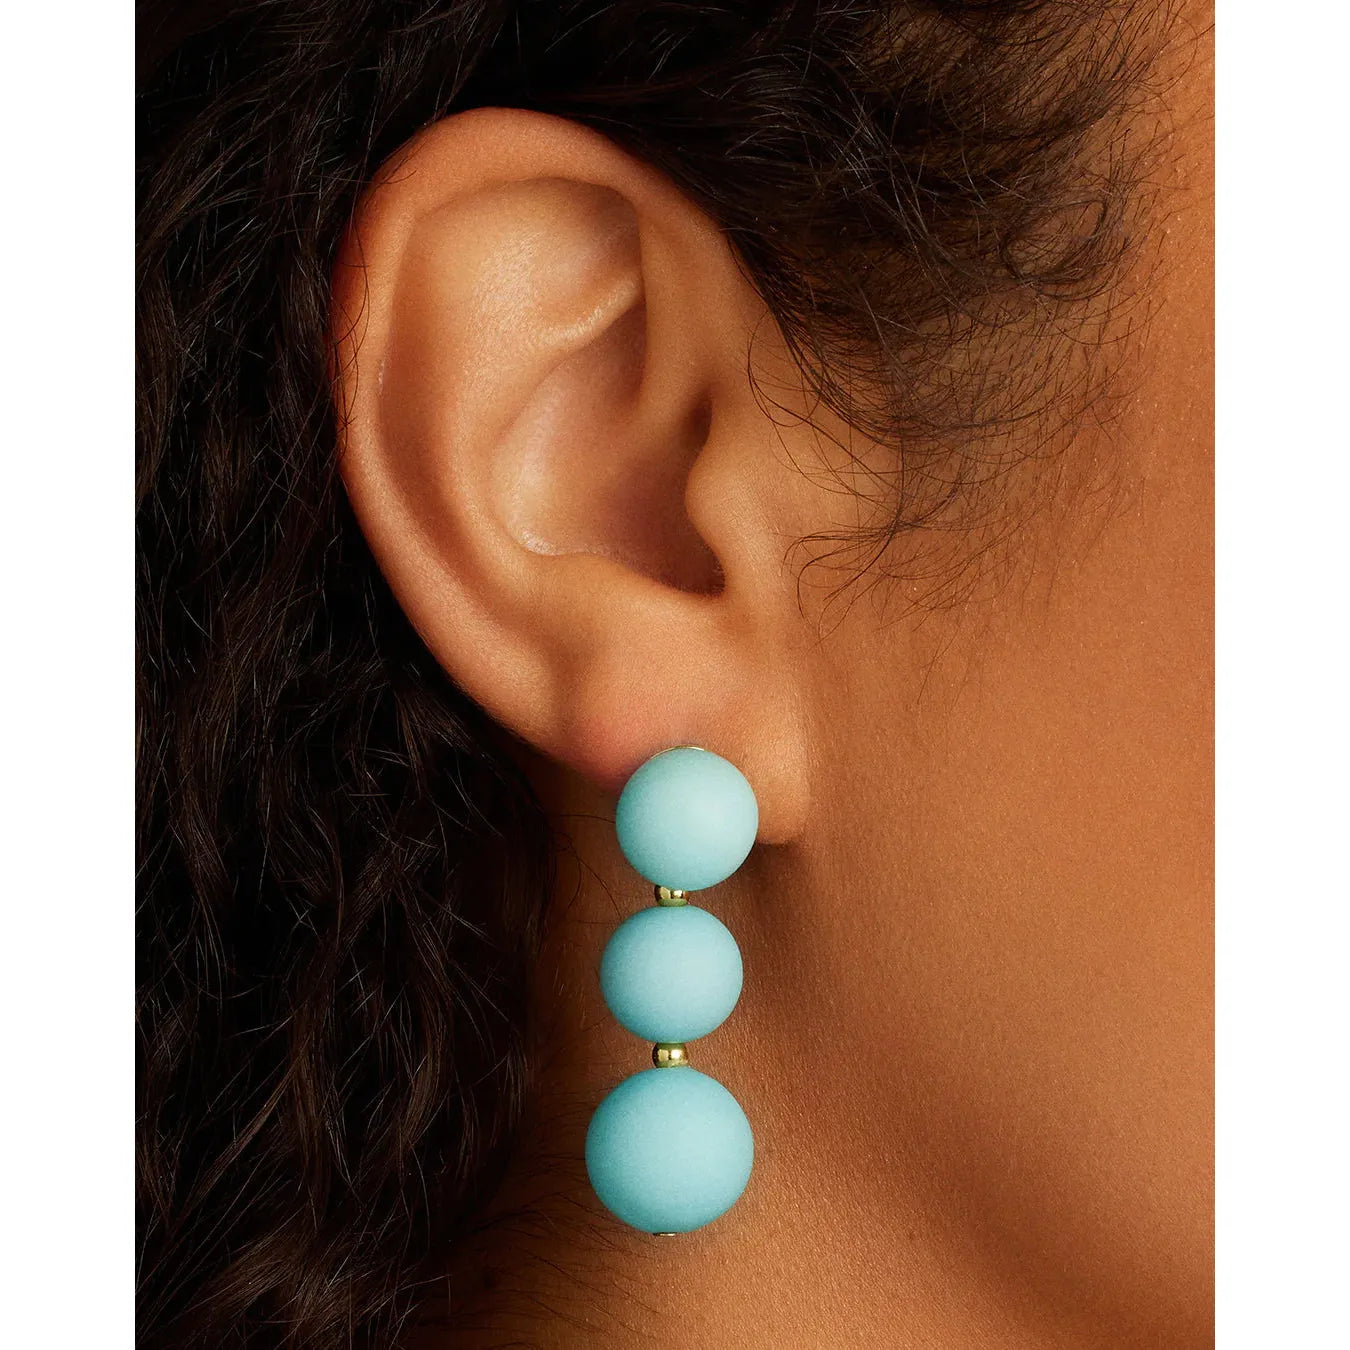 Iris Earrings (Light Turquoise)